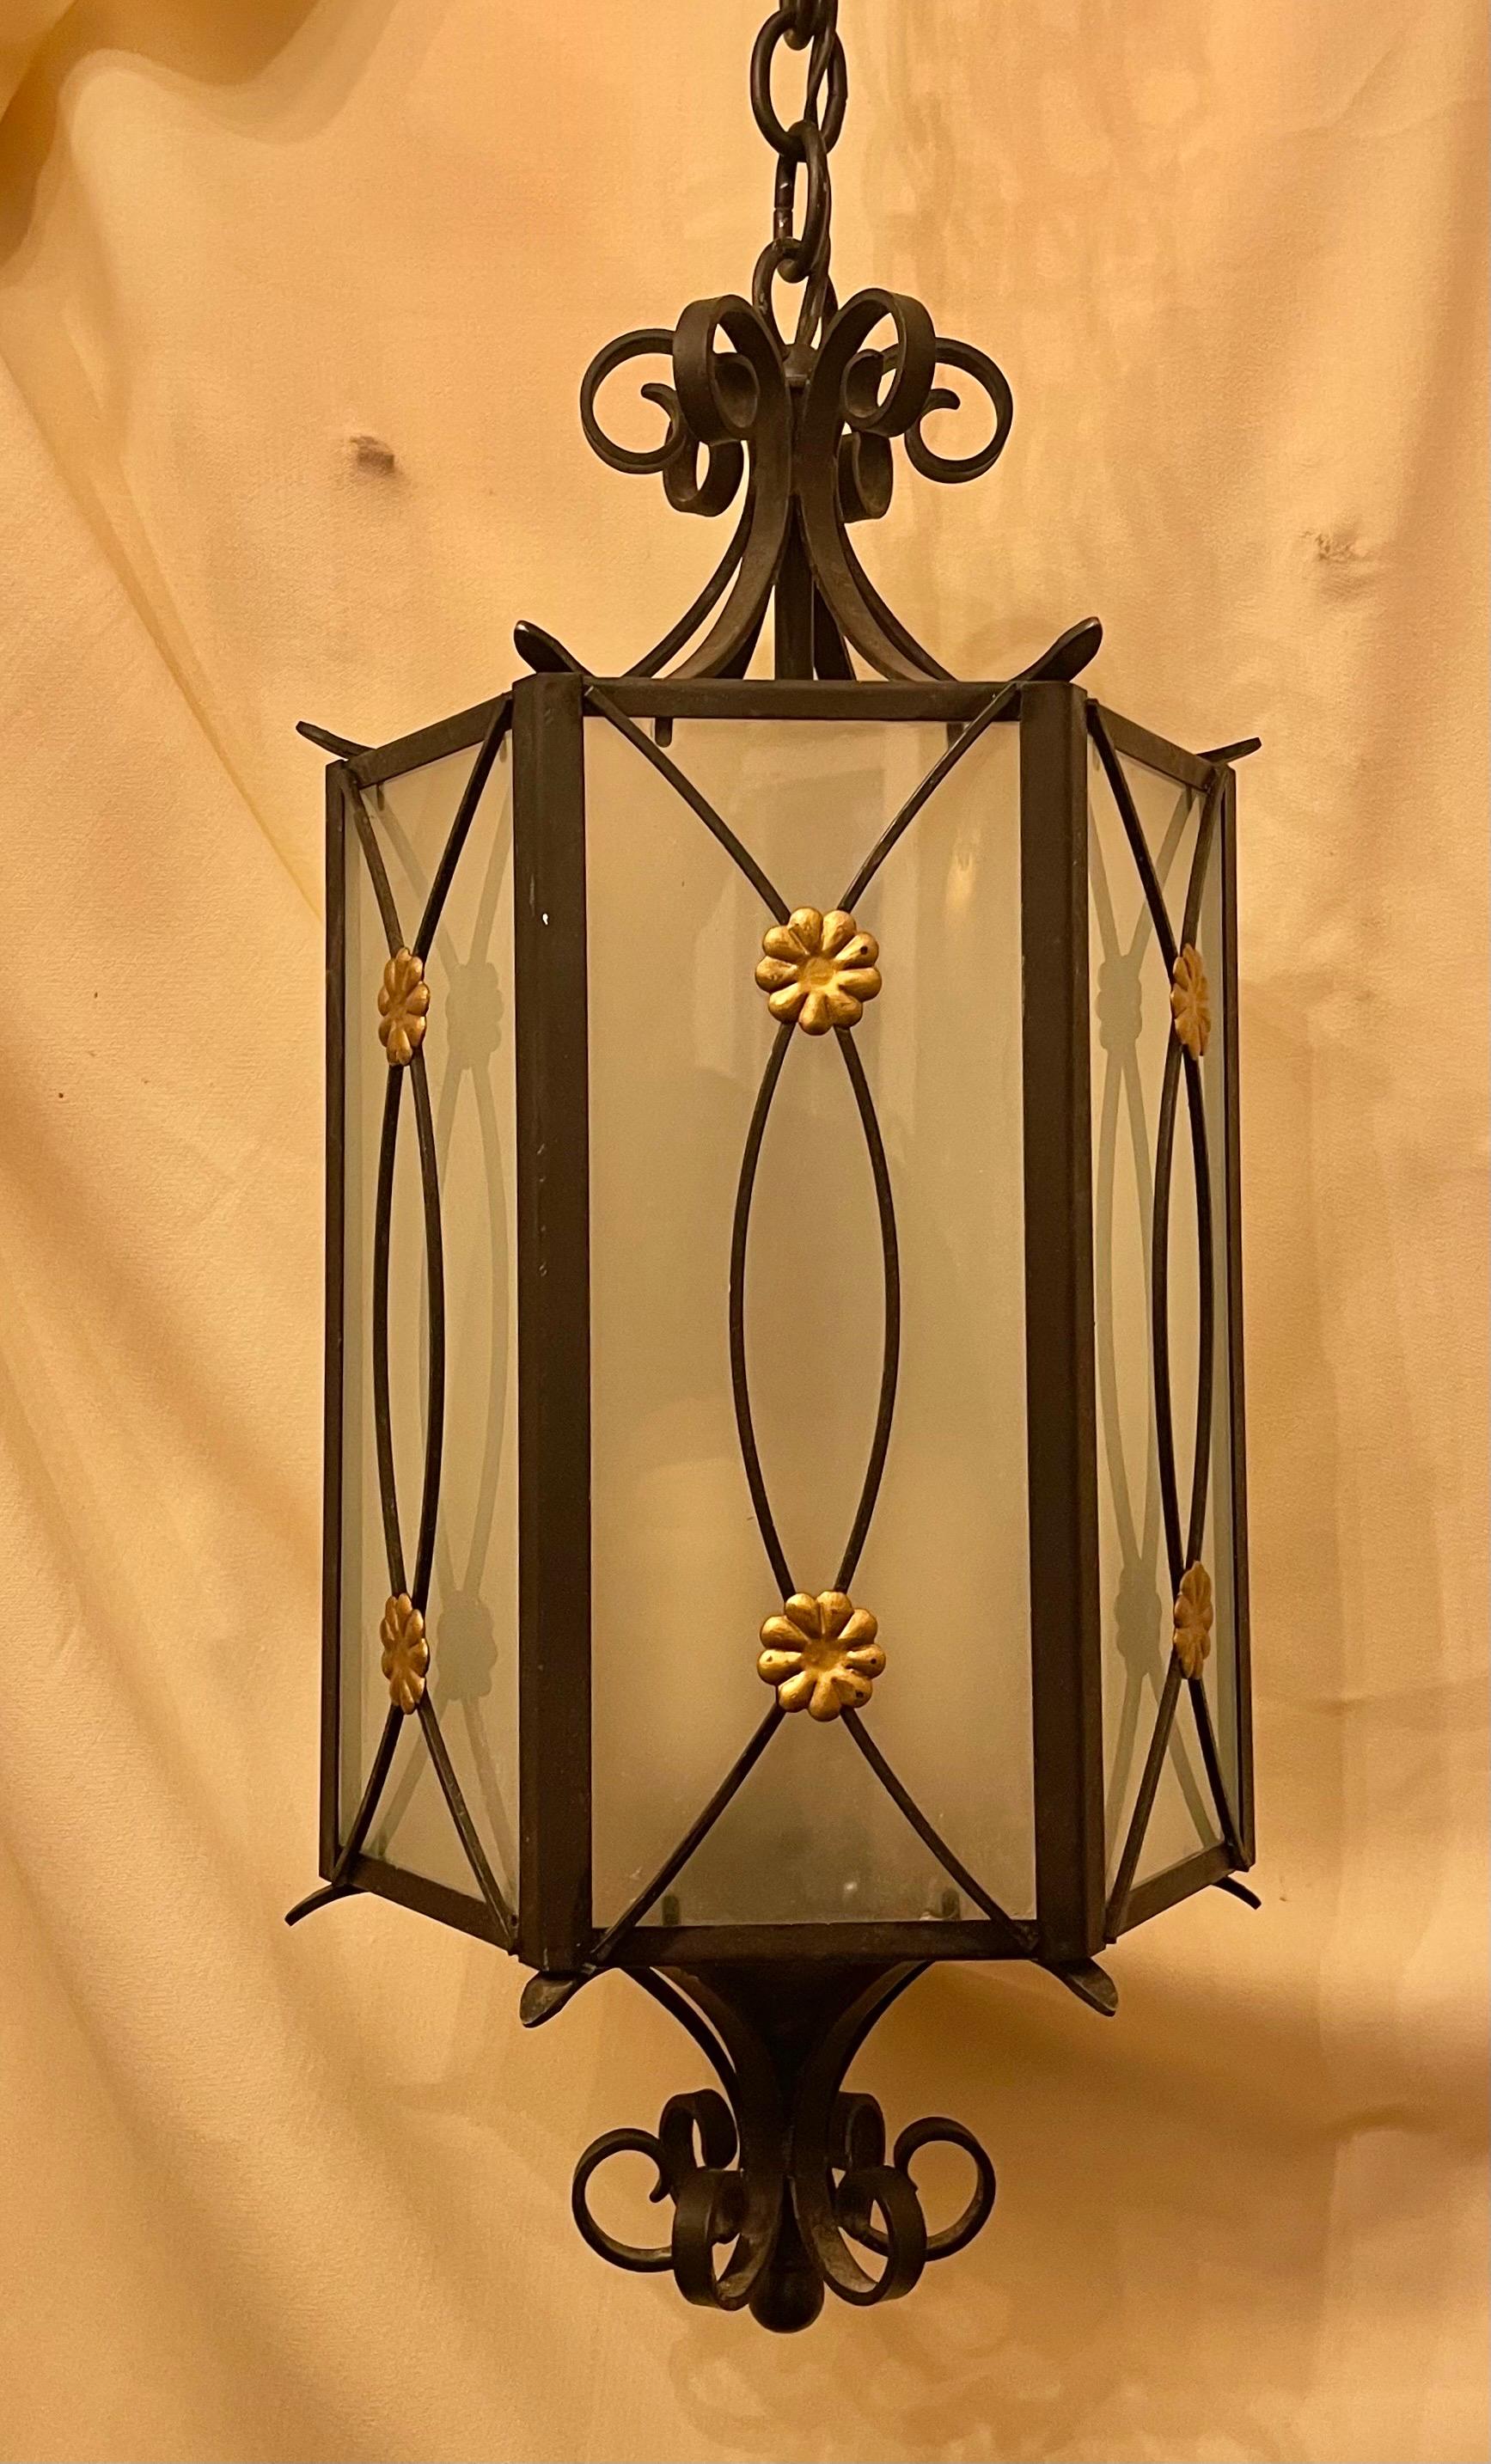 Magnifique lanterne hexagonale en fer de style Régence avec rosette de fleurs dorées et panneau de verre dépoli inséré, avec 3 douilles intérieures pour candélabres.